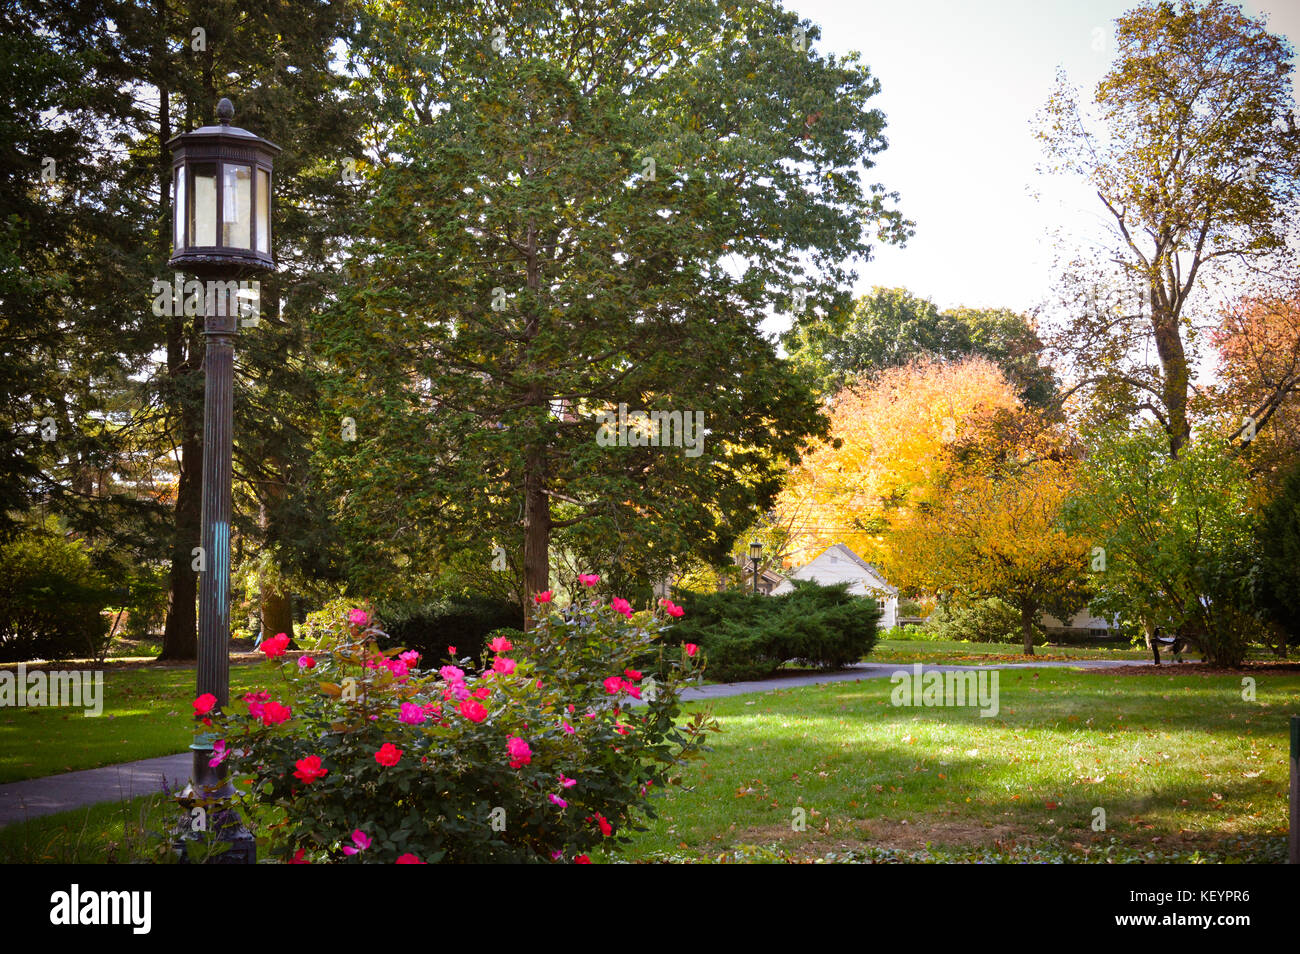 Eine alte Licht post in New-Hampshire sitzt unter einem Busch von rosa Blumen entlang einem Park Promenade. Stockfoto